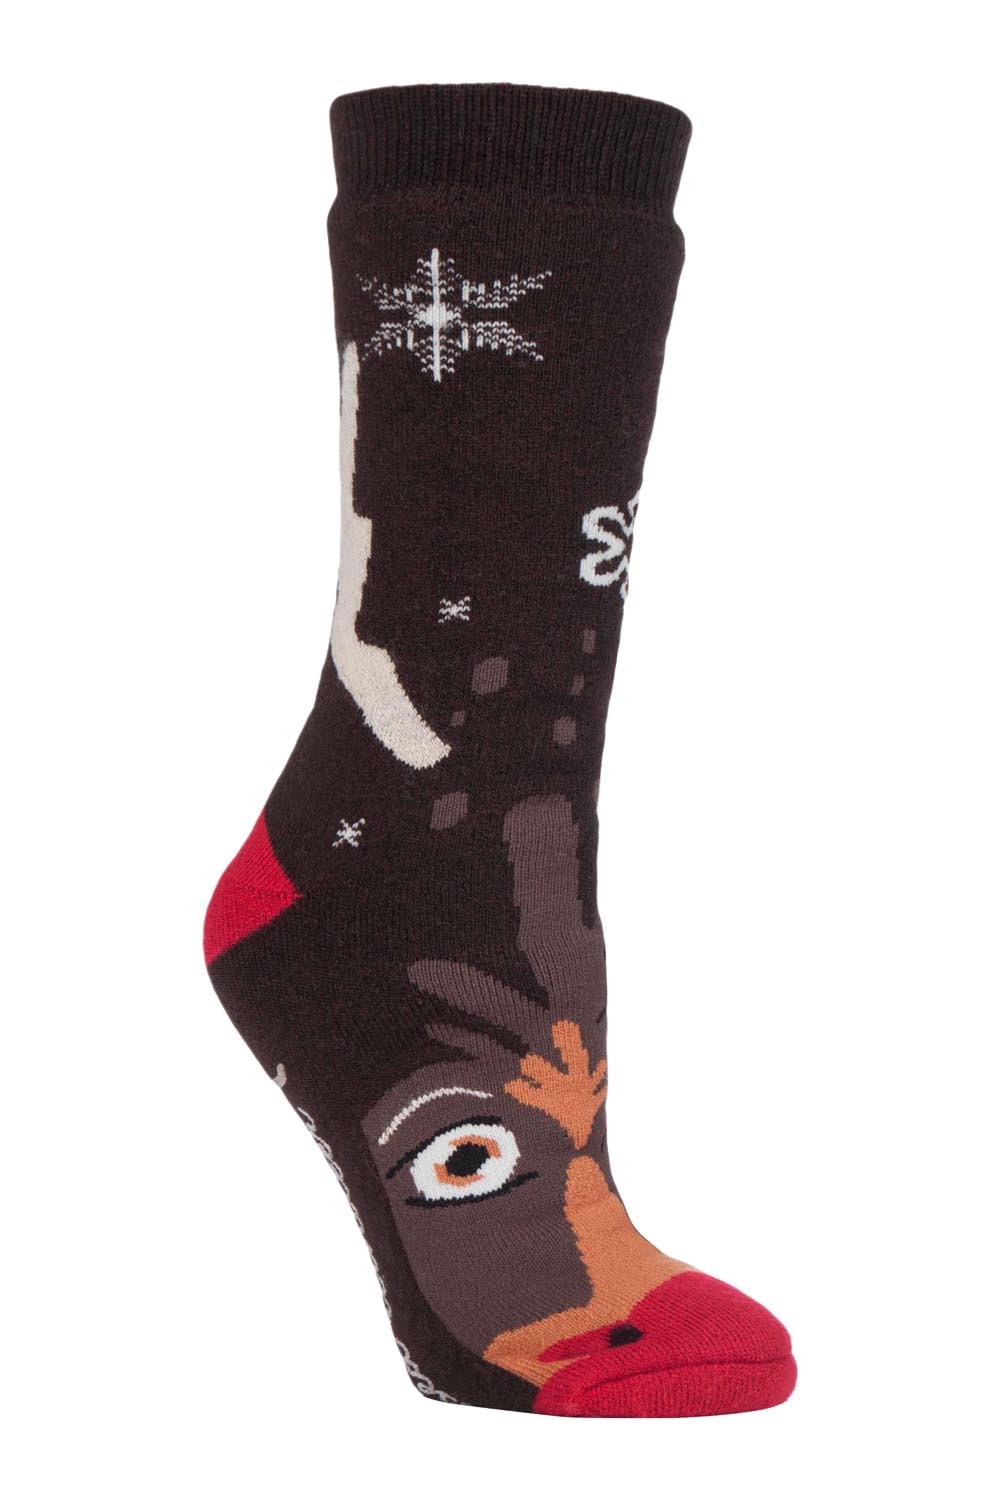 Womens Christmas Non Slip Thermal Slipper Socks -